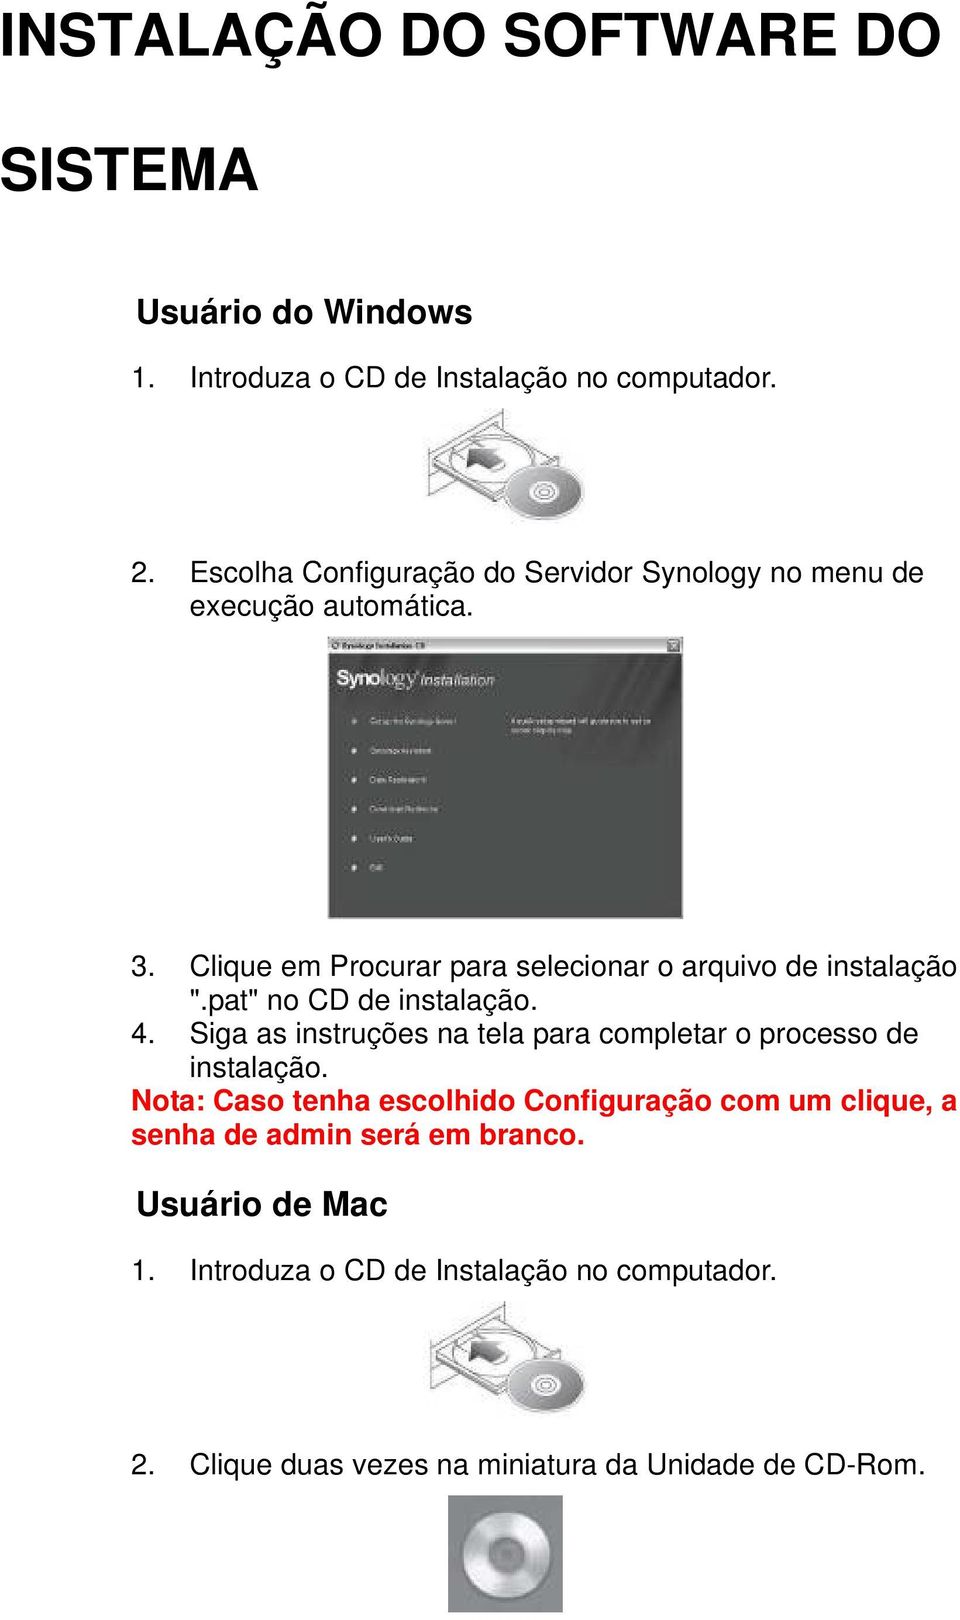 Clique em Procurar para selecionar o arquivo de instalação ".pat" no CD de instalação. 4.